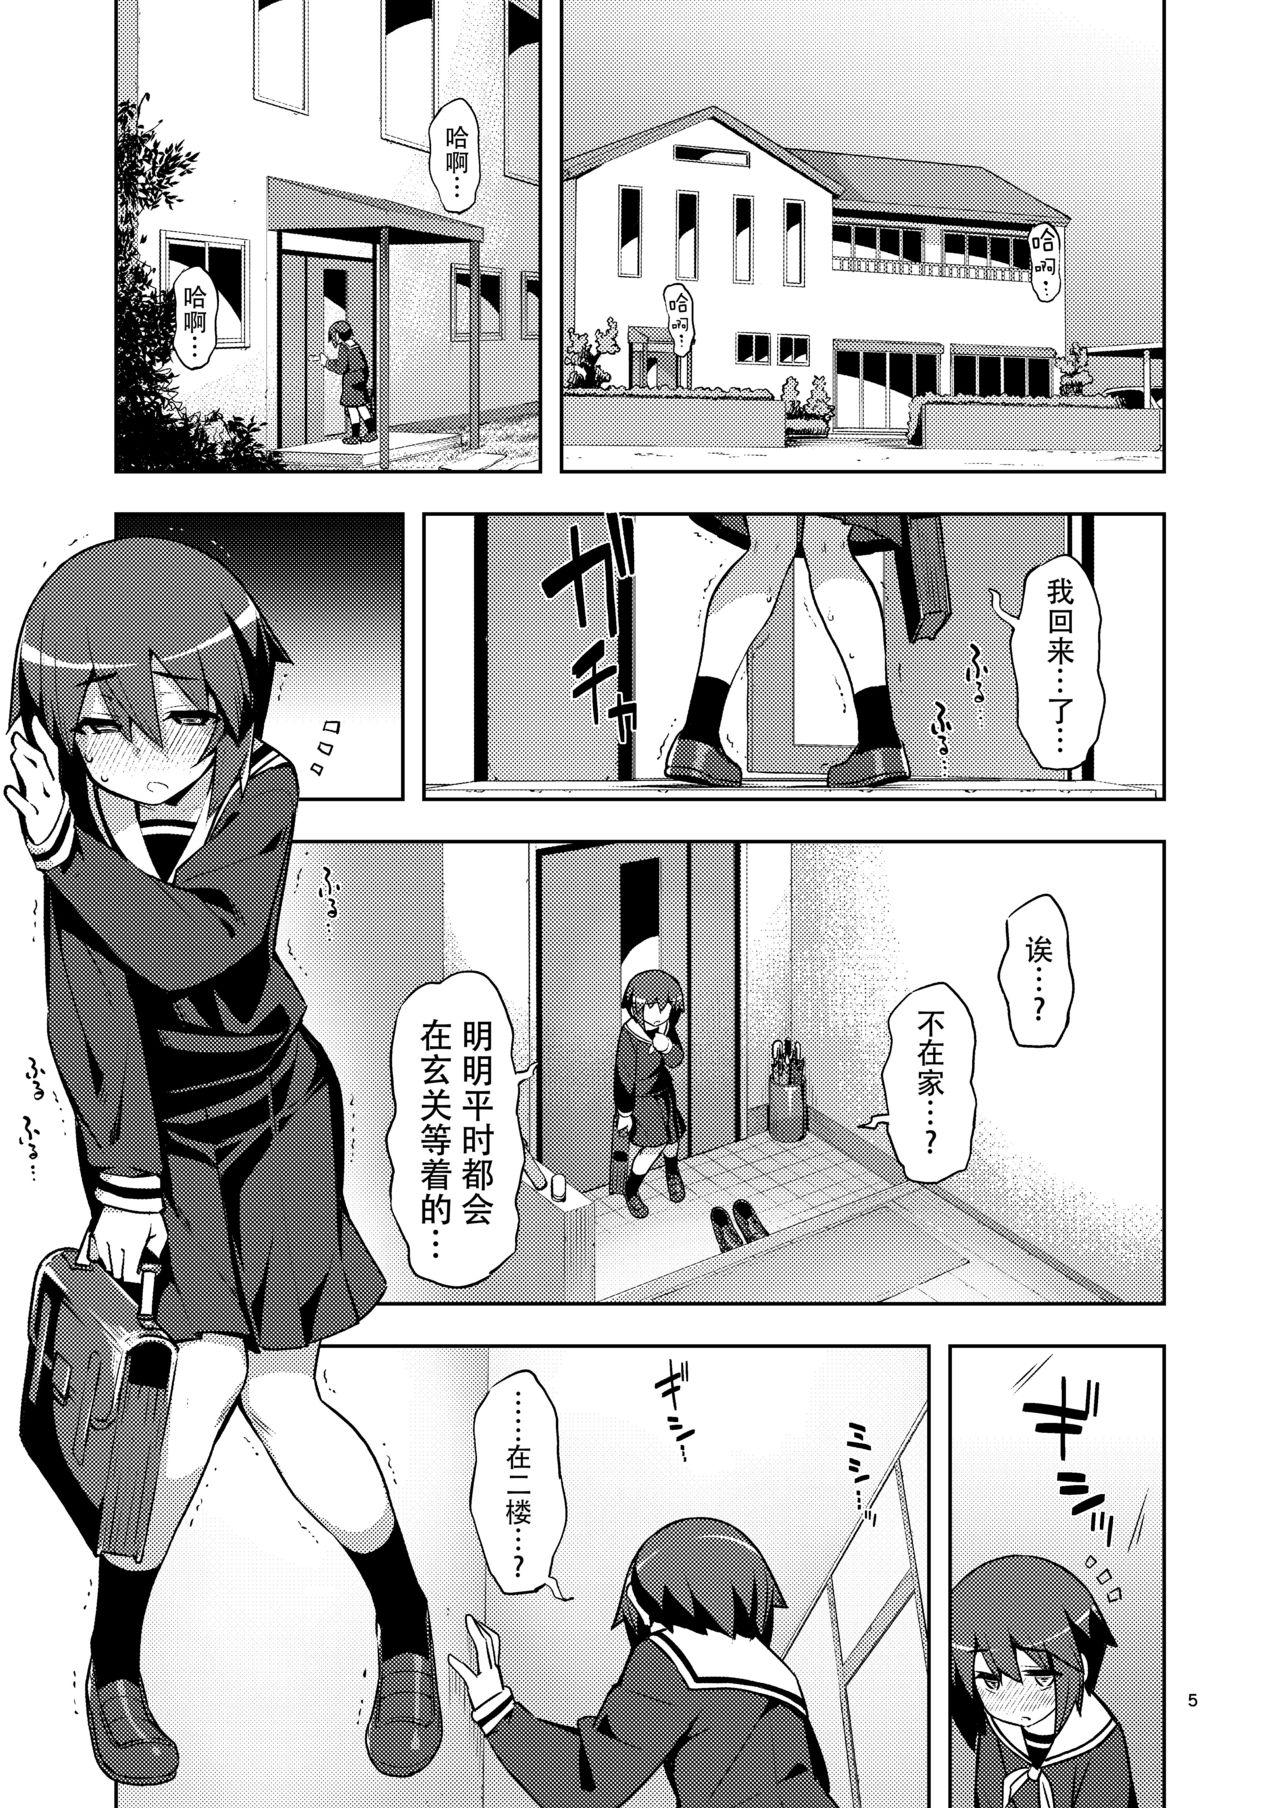 Piss RE-EX Sachiusui Bokukko ga Shiawase? Ni Naru Made no Hanashi 2 - Original Bra - Page 5